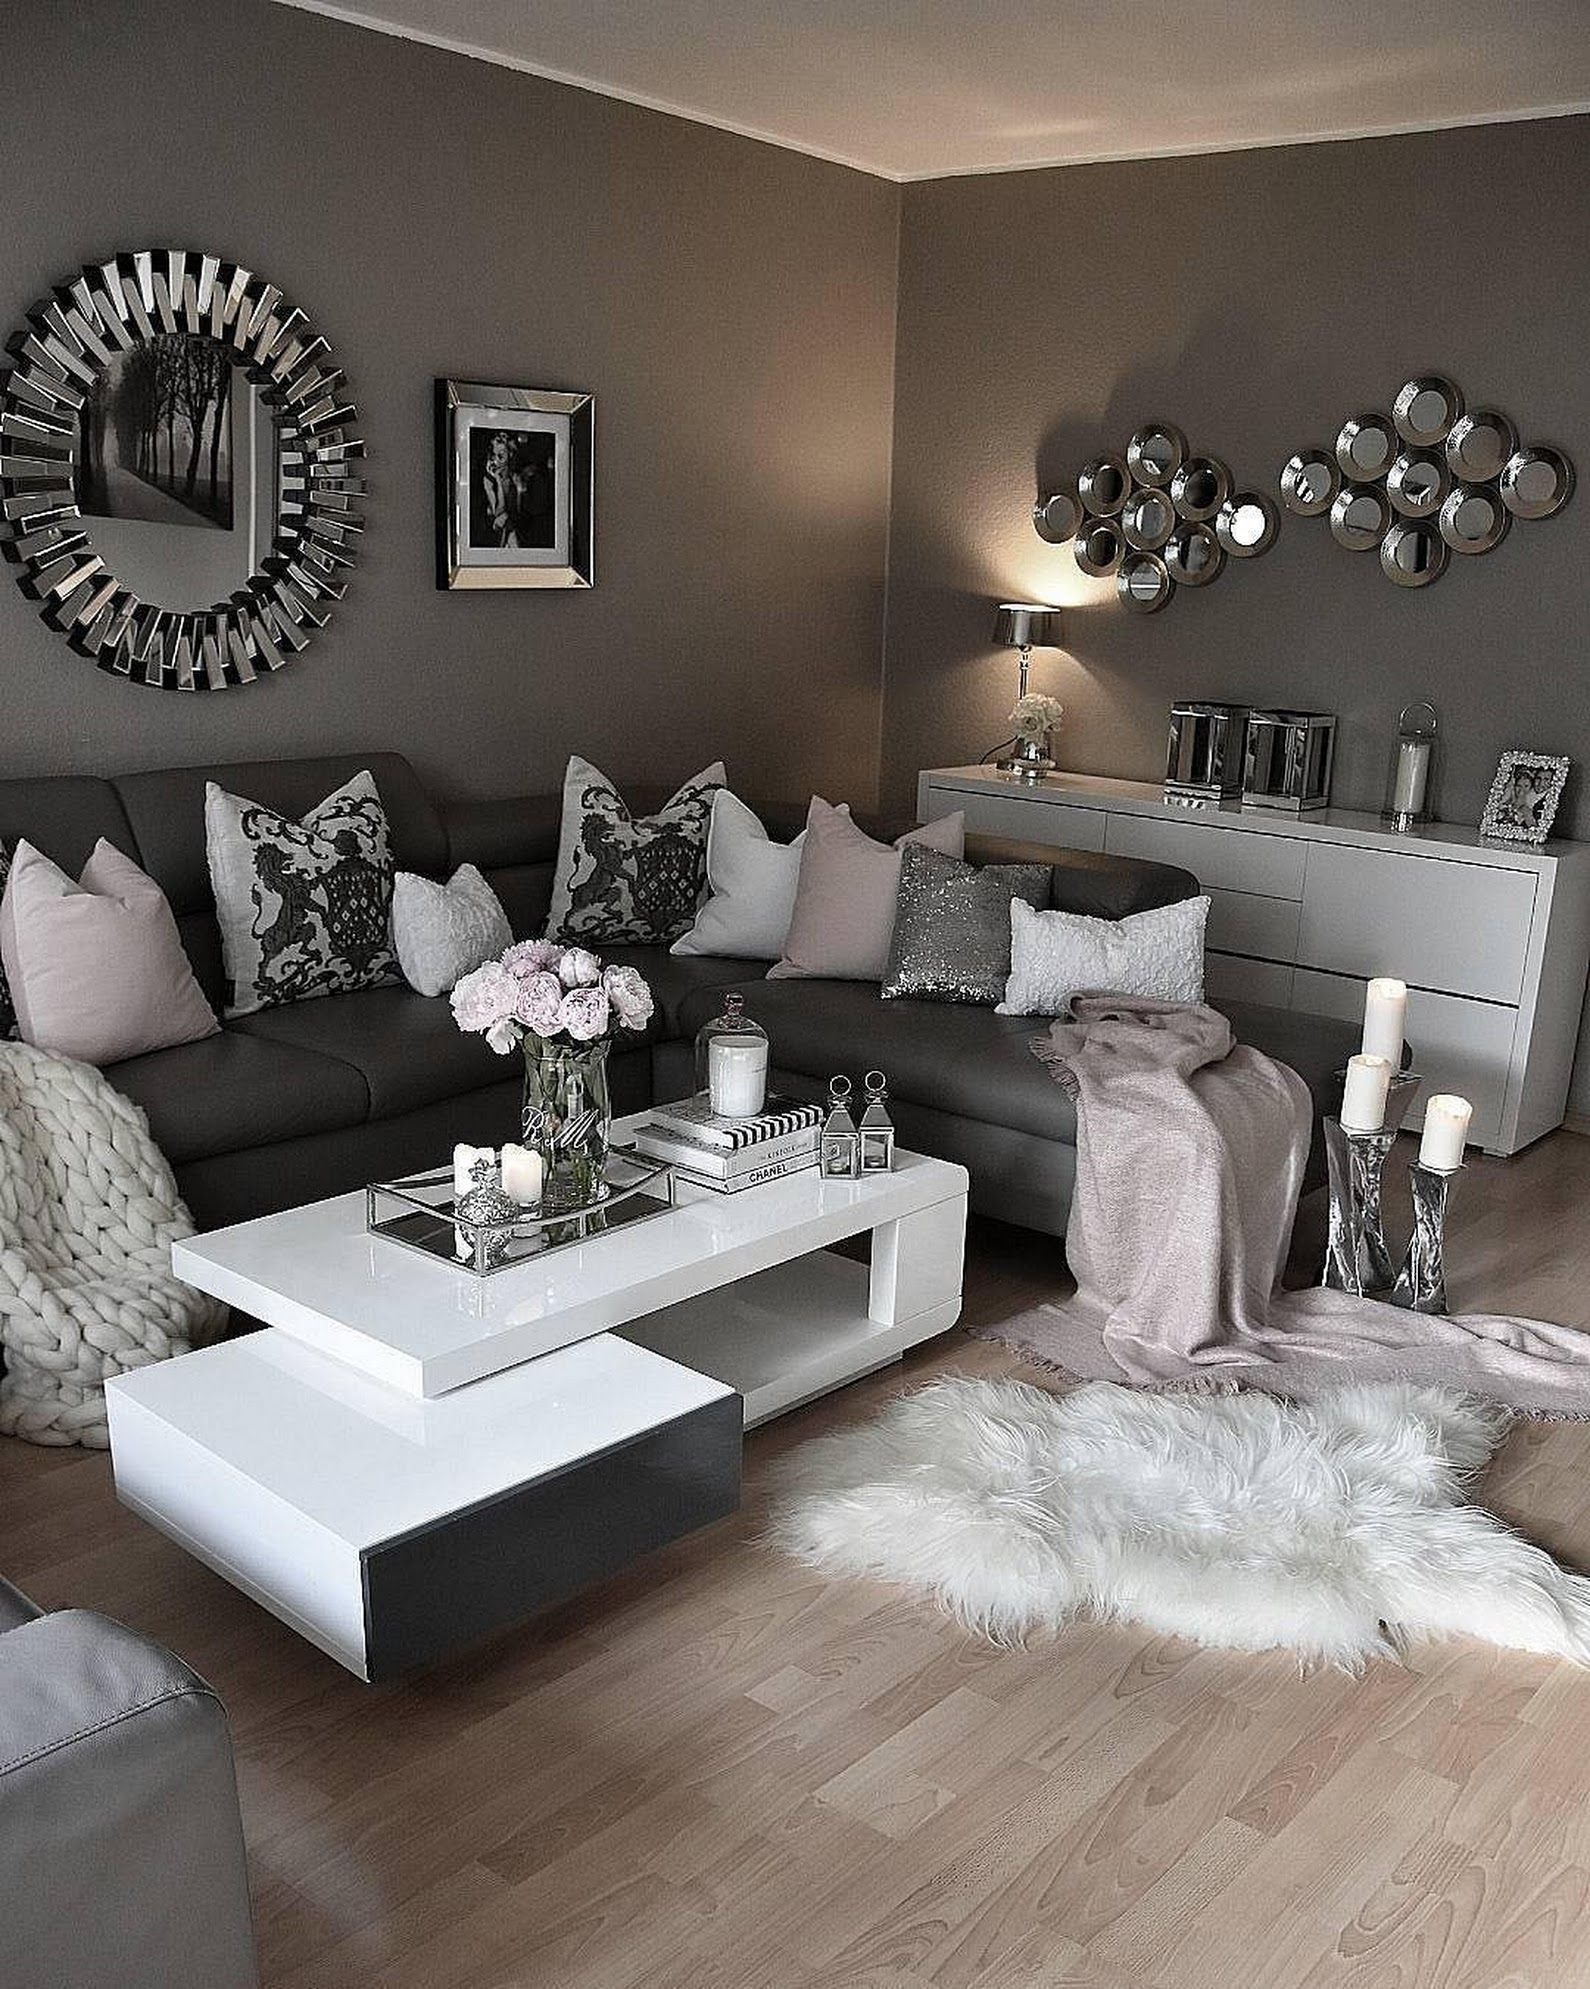 Комната с серой мебелью. Гостиная в серых тонах. Оттенки серого в интерьере. Интерьер в сером стиле. Серый цвет в интерьере.